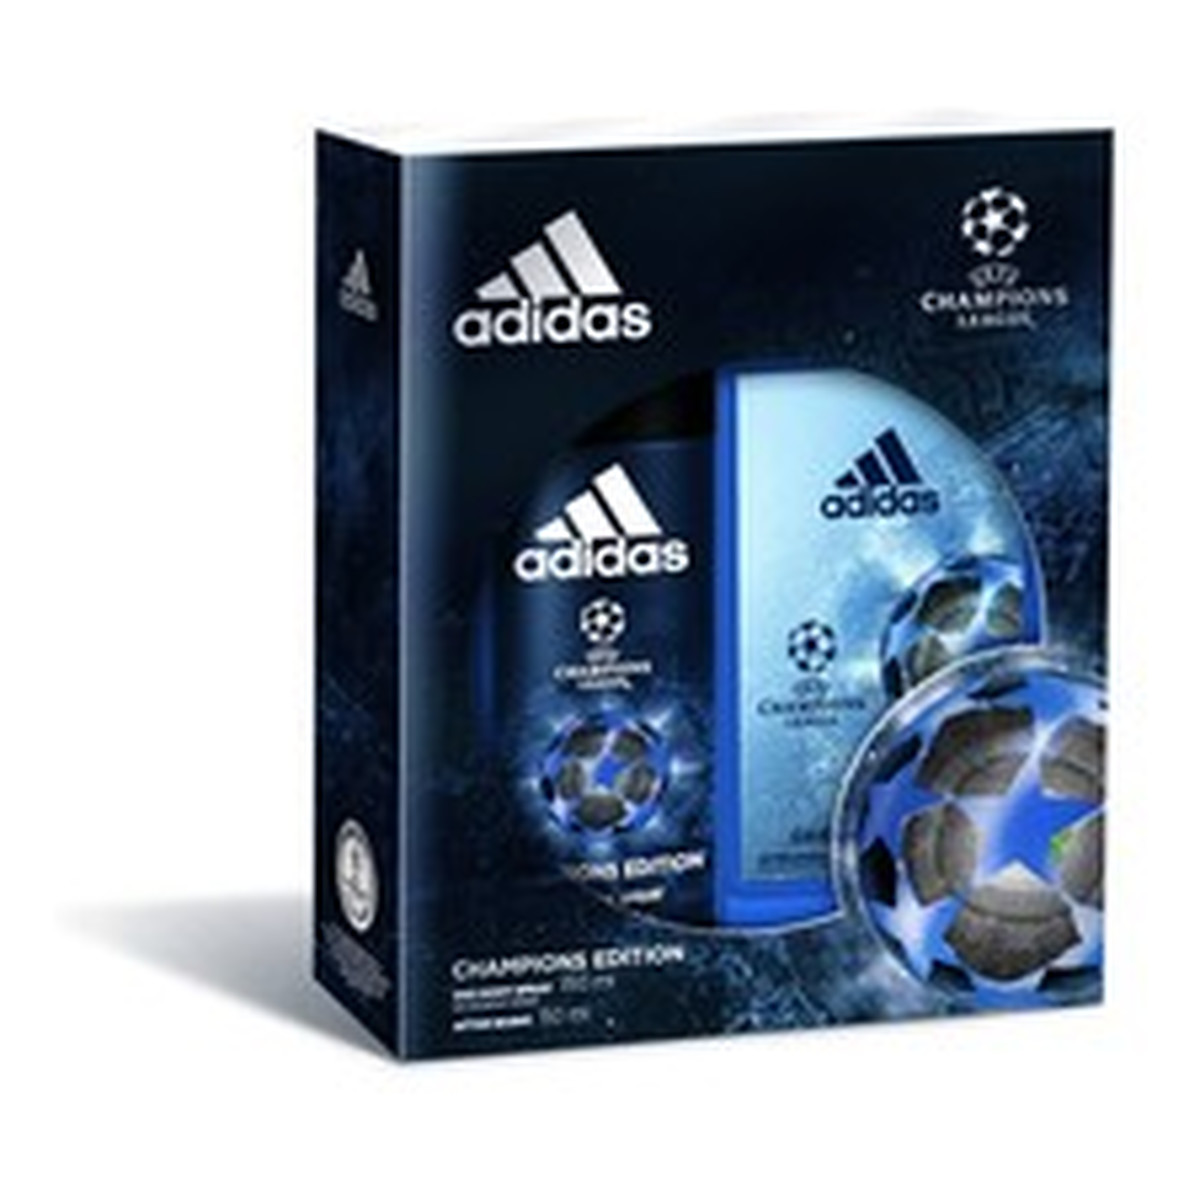 Adidas Champions League Zestaw prezentowy męski dezodorant spray + woda po goleniu